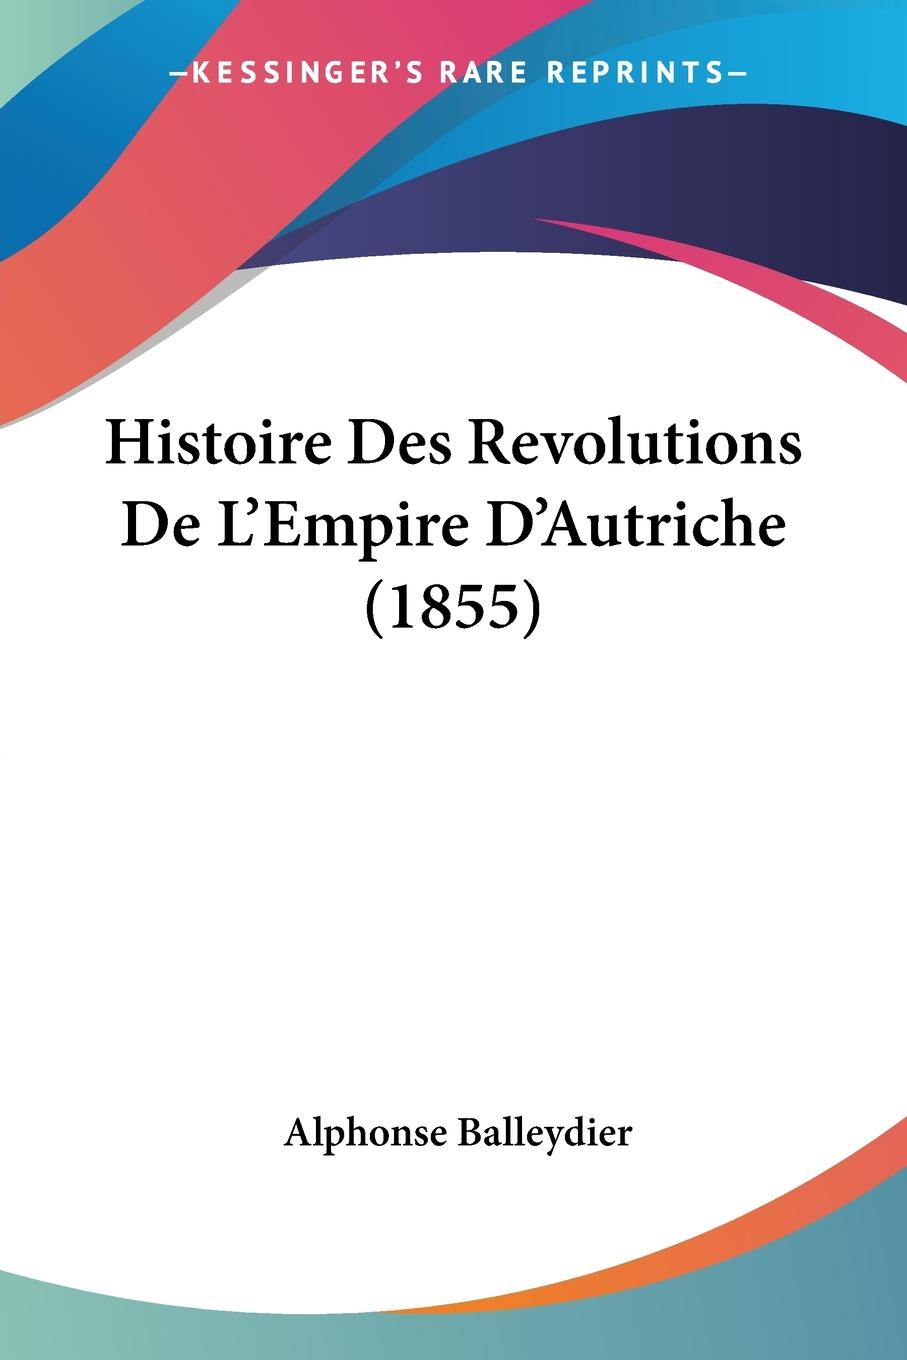 Histoire Des Revolutions De L Empire D Autriche (1855) - Balleydier, Alphonse